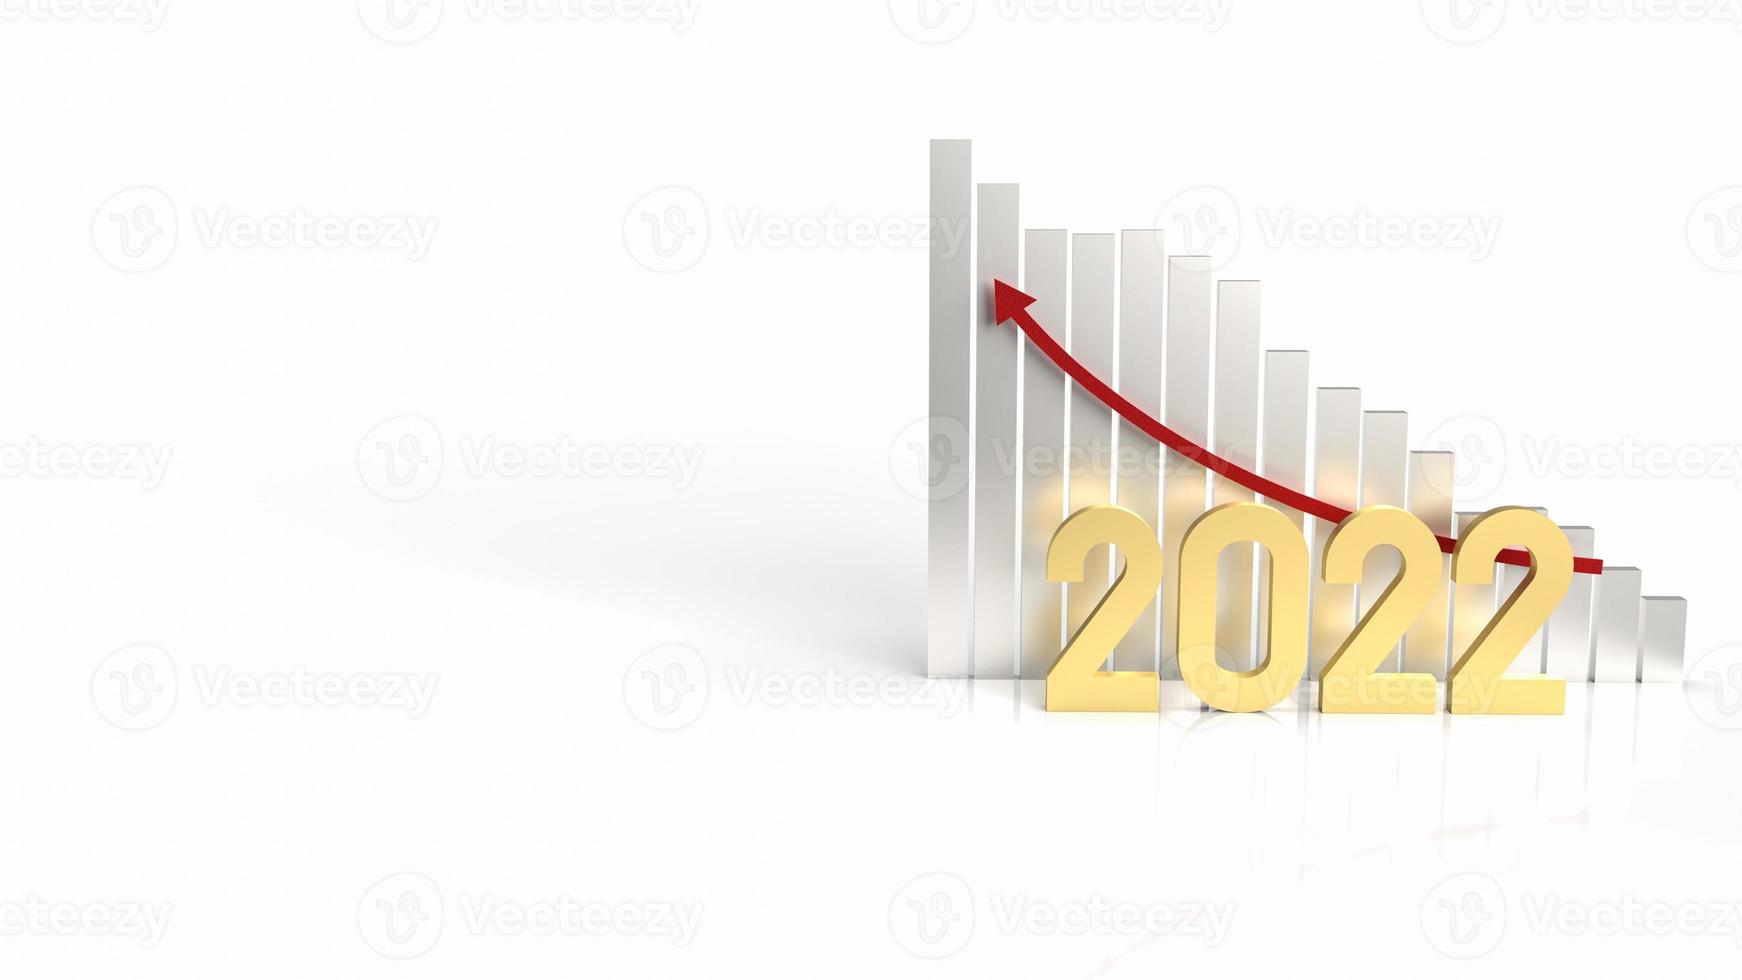 2022 oro y flecha de gráfico hacia arriba para representación 3d de contenido empresarial foto